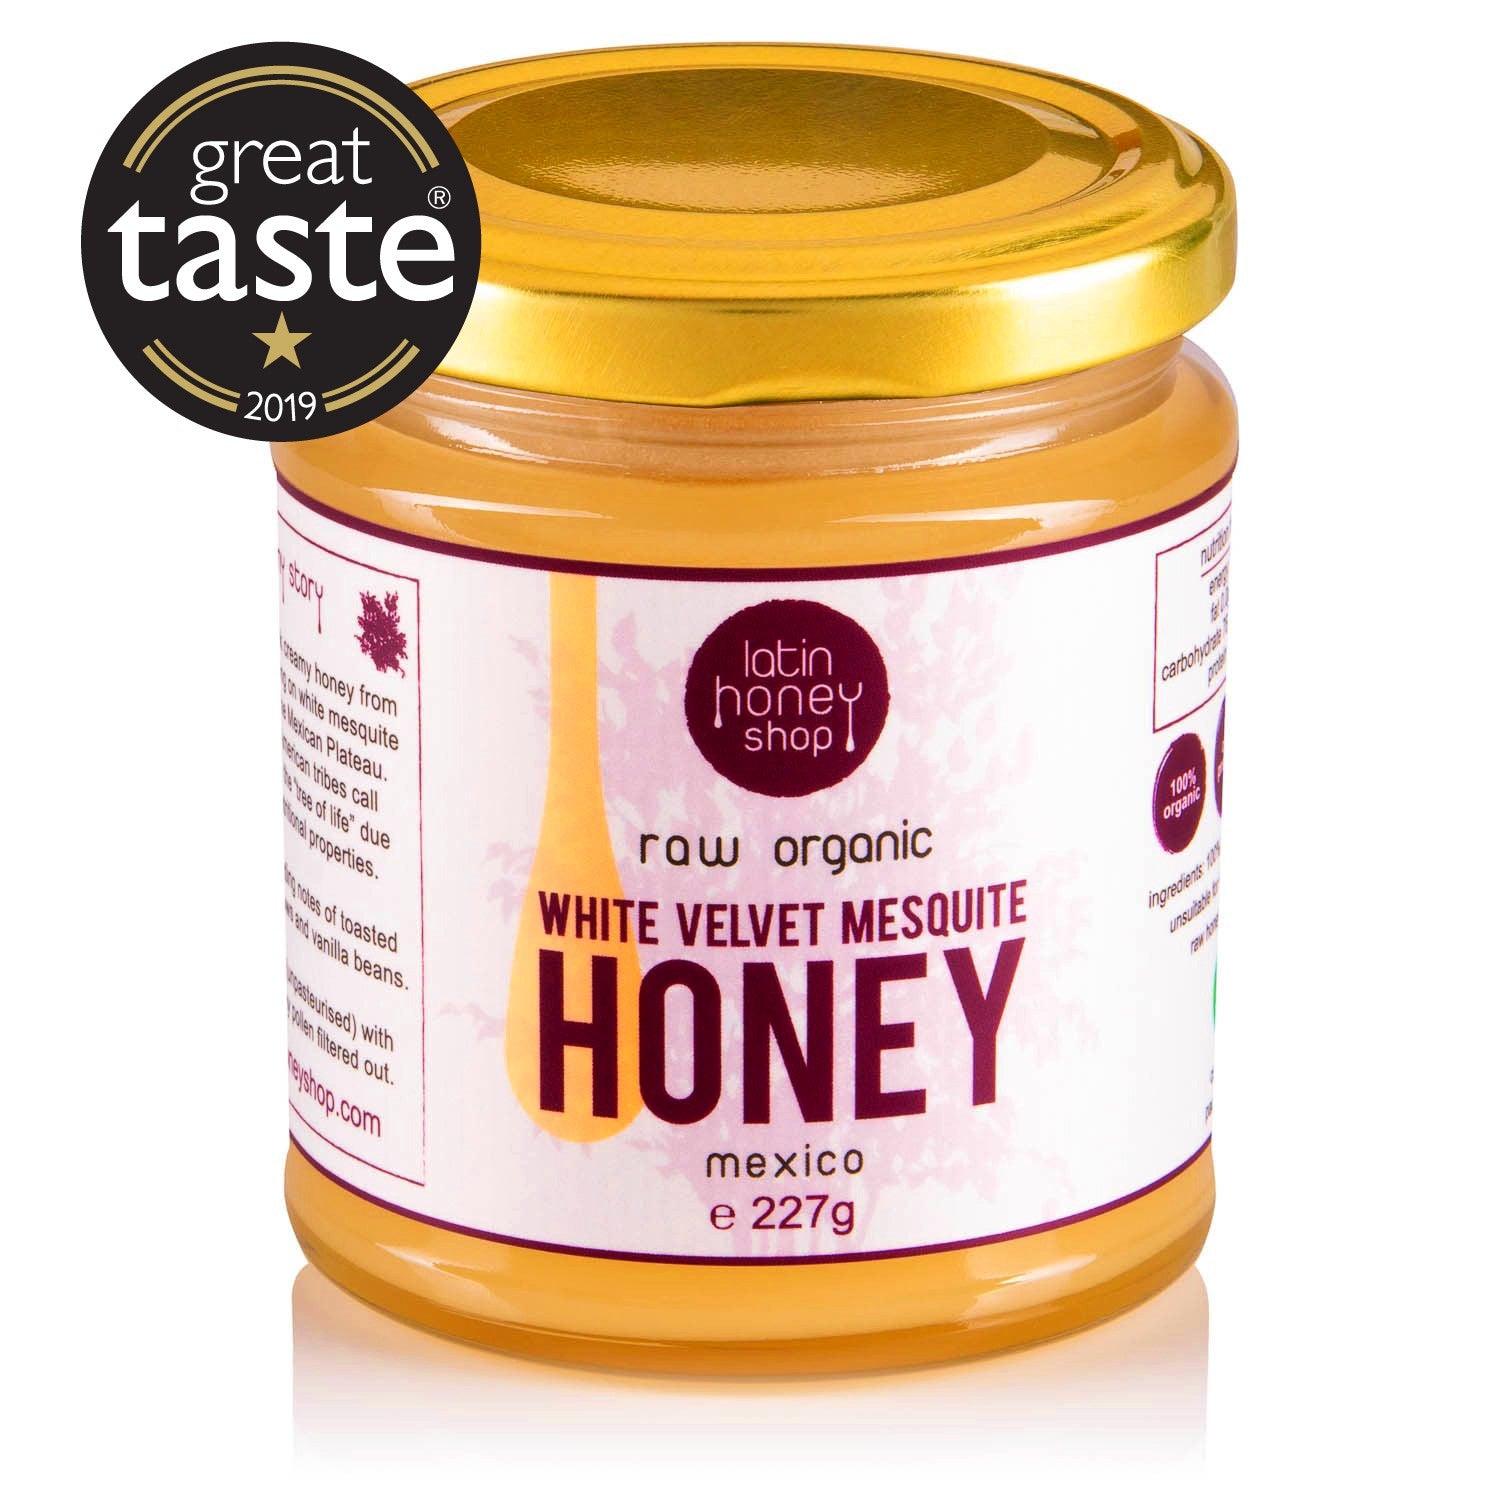 Latin Honey Shop Raw Organic White Velvet Mesquite Honey From Mexico